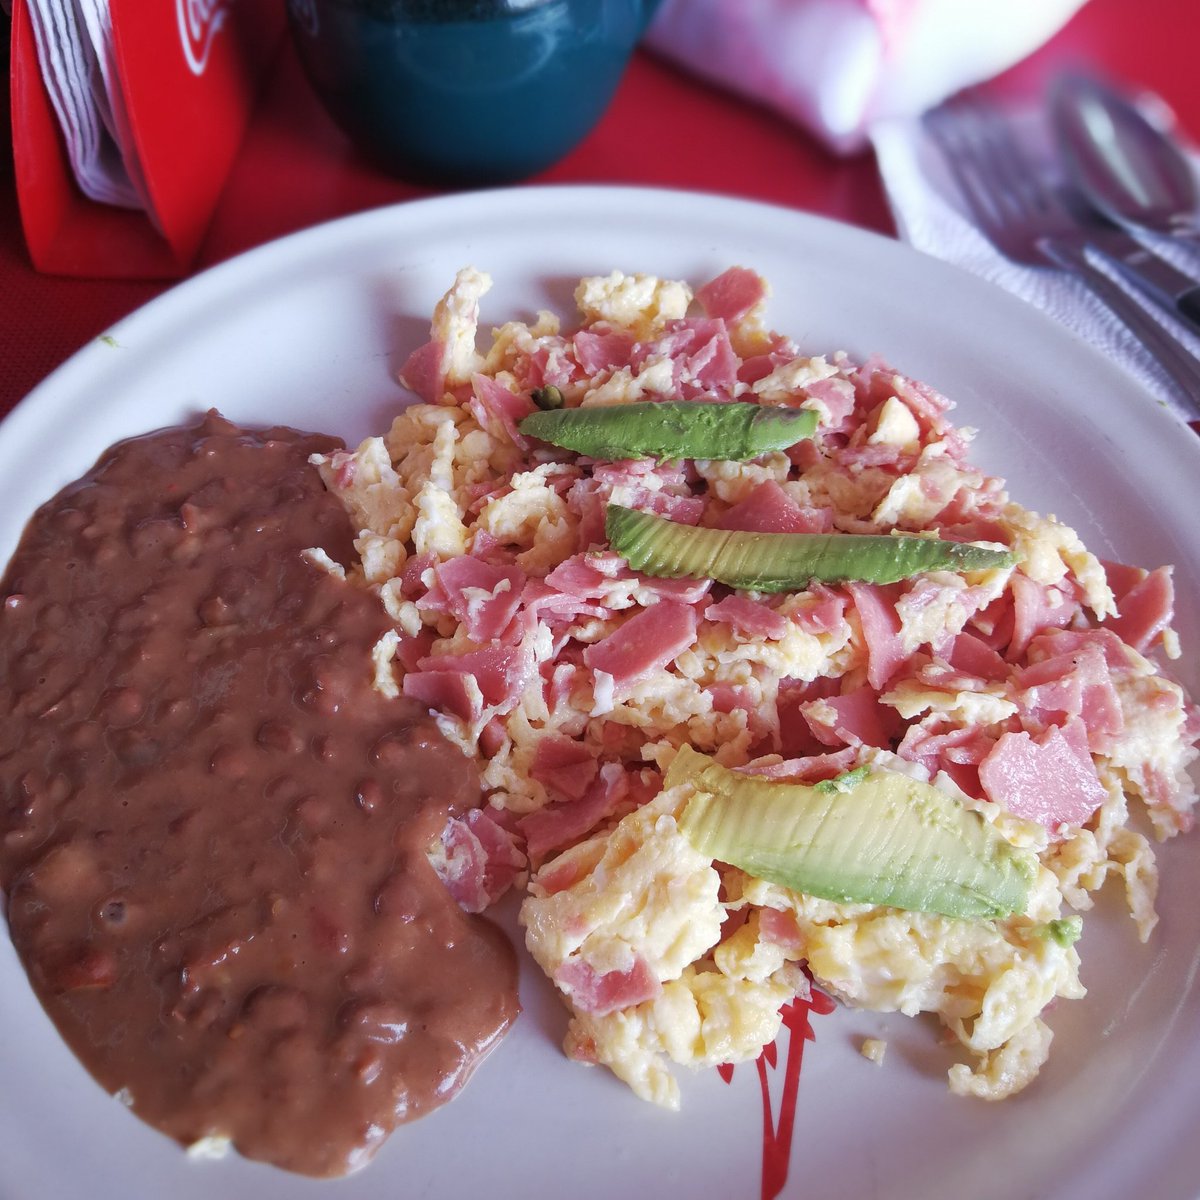 A desayunar amigos!! #FelizSabado #DesayunoMexicano ☕️☕️